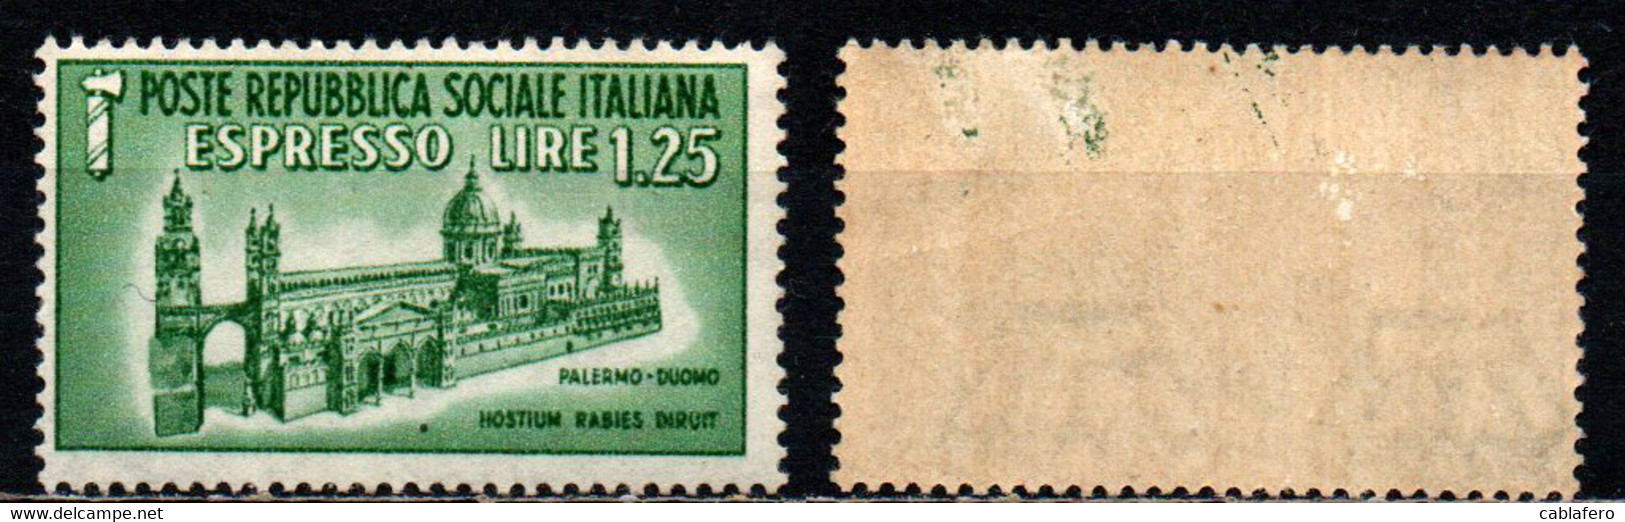 ITALIA RSI - 1944 - DUOMO DI PALERMO - MH - Posta Espresso